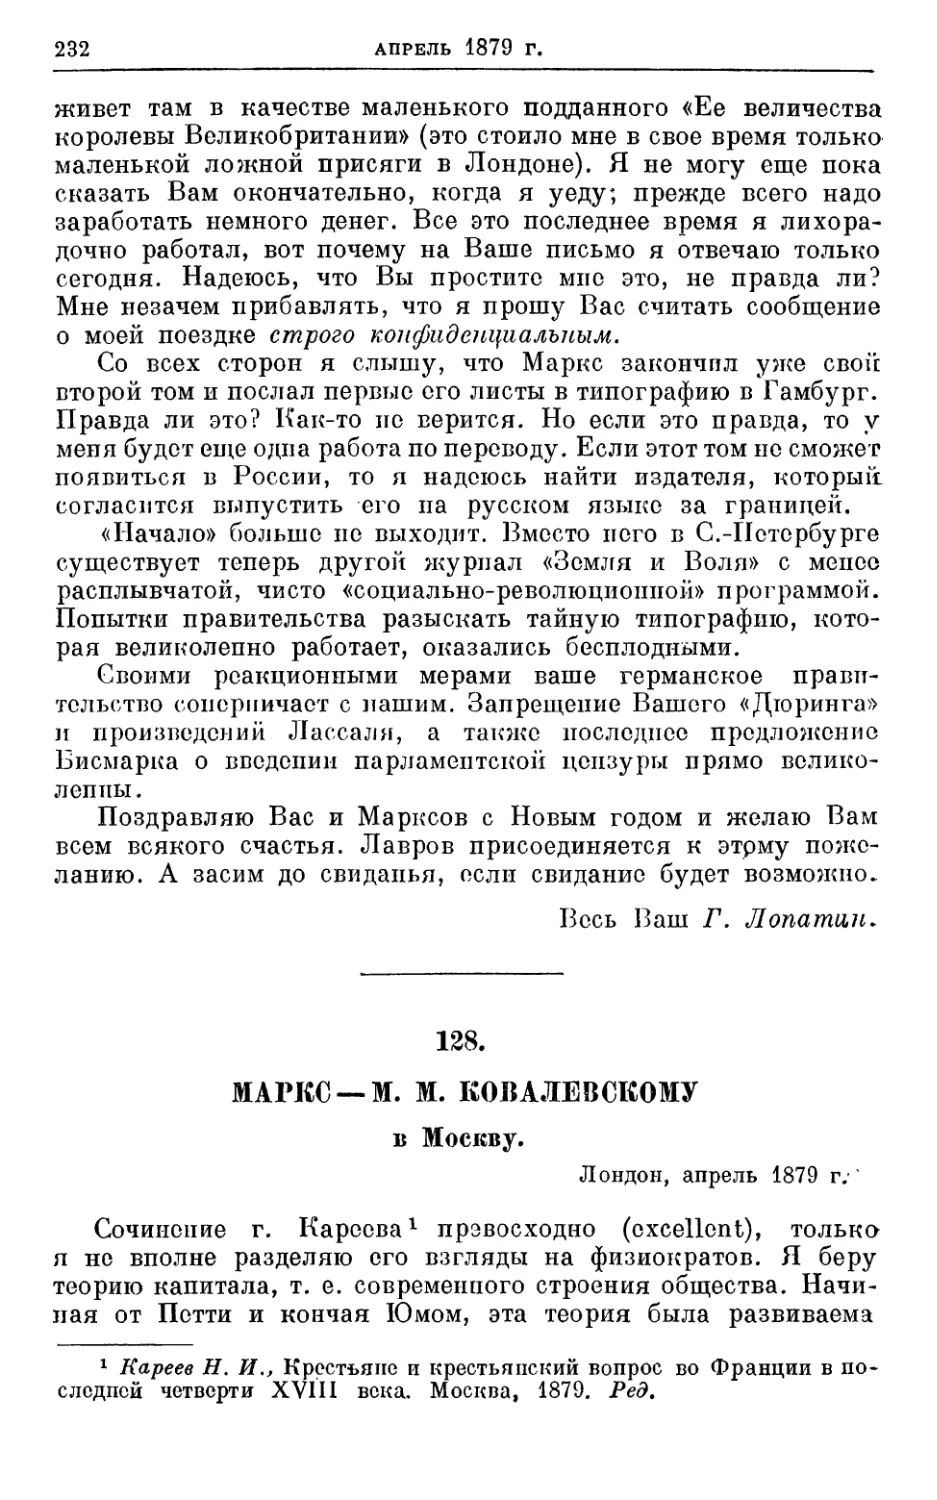 128. Маркс — М. М. Ковалевскому, апрель 1879г